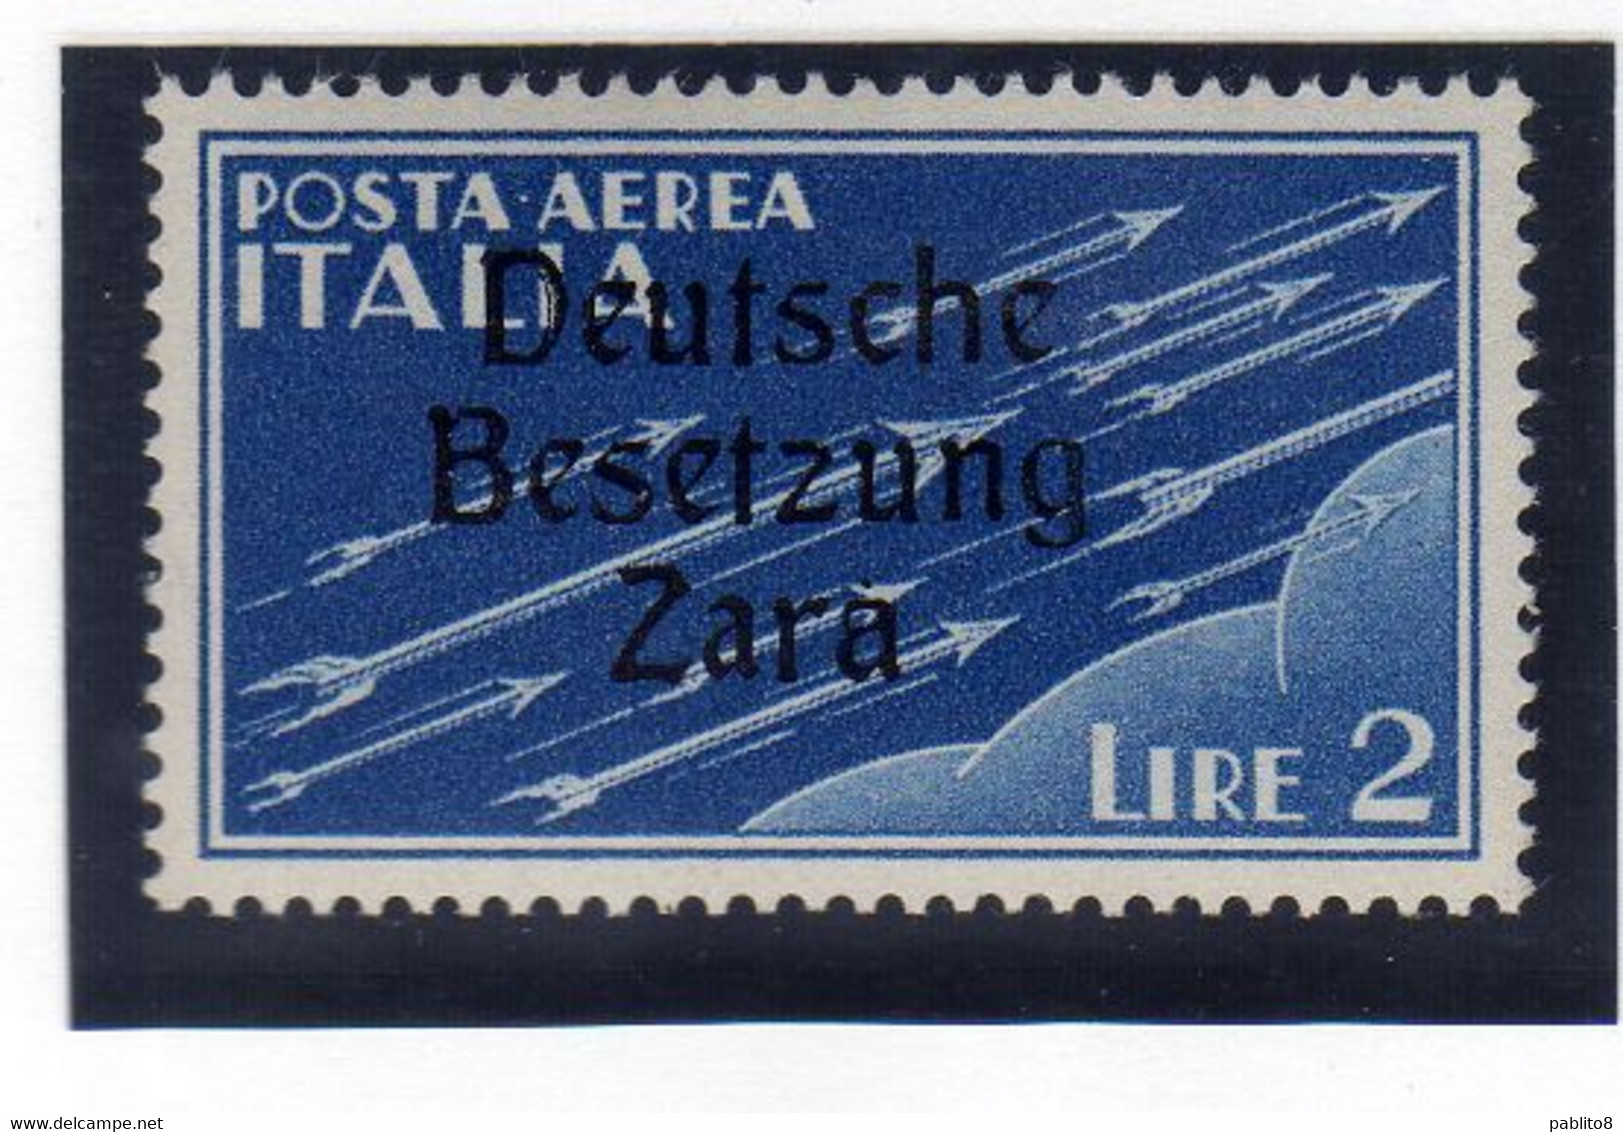 ZARA OCCUPAZIONE TEDESCA GERMAN OCCUPATION 1943 POSTA AEREA AIR MAIL VARIETÀ VARIETY LIRE 2 MNH FIRMATO SIGNED - Deutsche Bes.: Zara